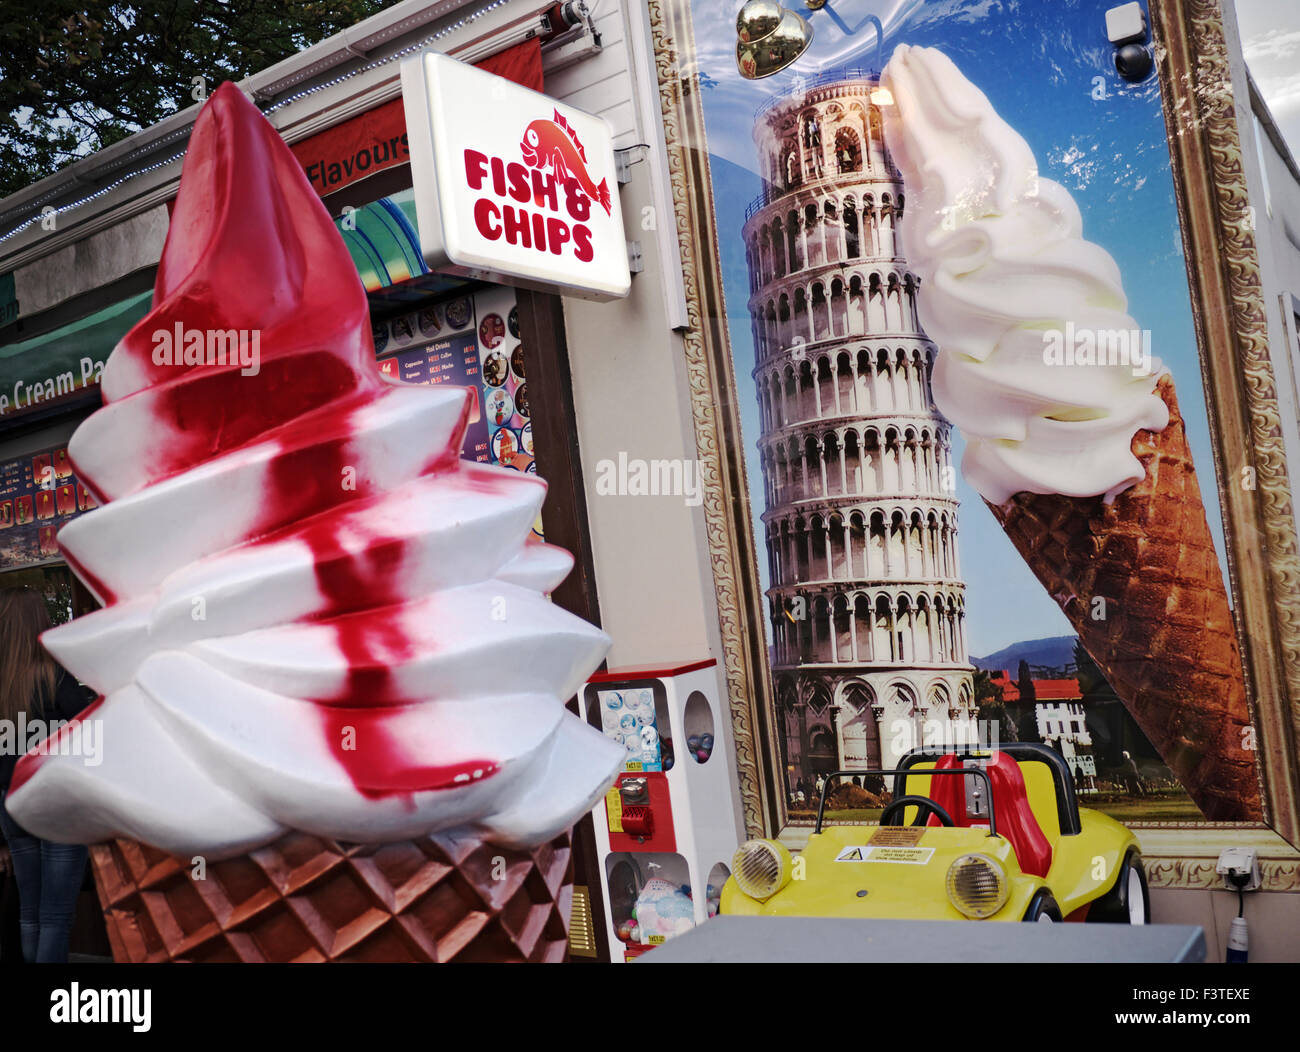 Kontrastierende Point of Sales Darstellungsstile auf Kitsch, touristische Shop anzeigen Fish & Chips mit Eistüten Display und der Schiefe Turm von Pisa Stockfoto